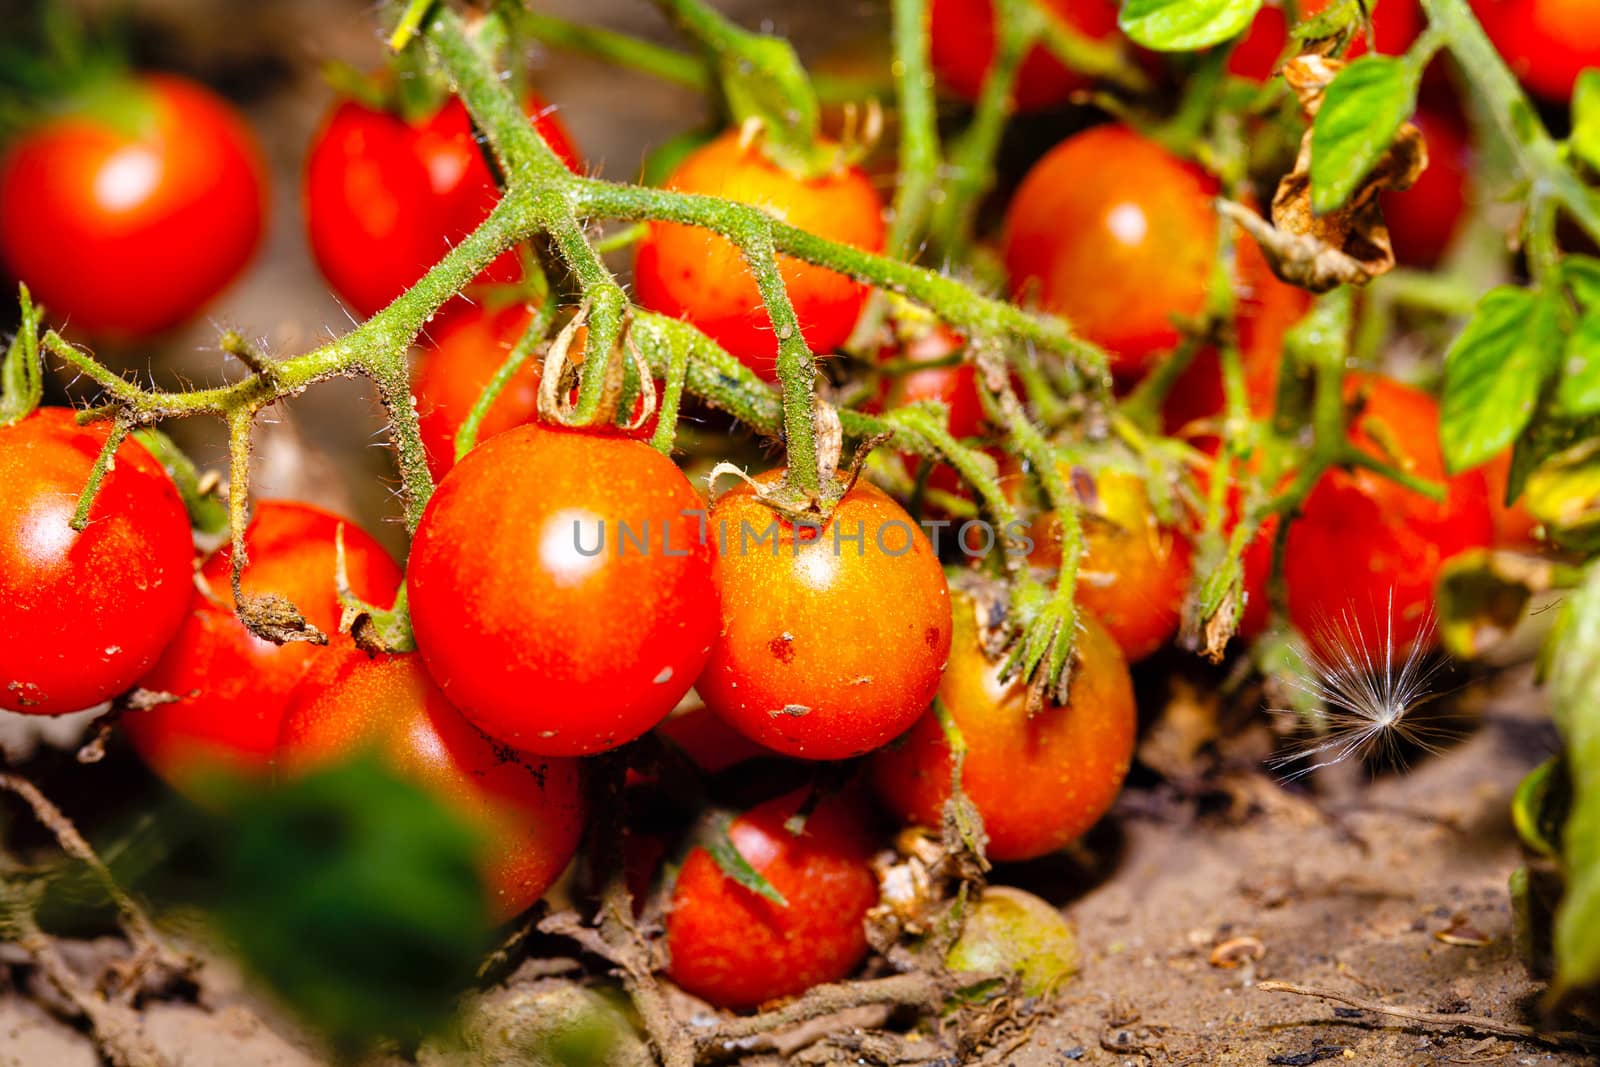 Cherry tomatoes by Vagengeym